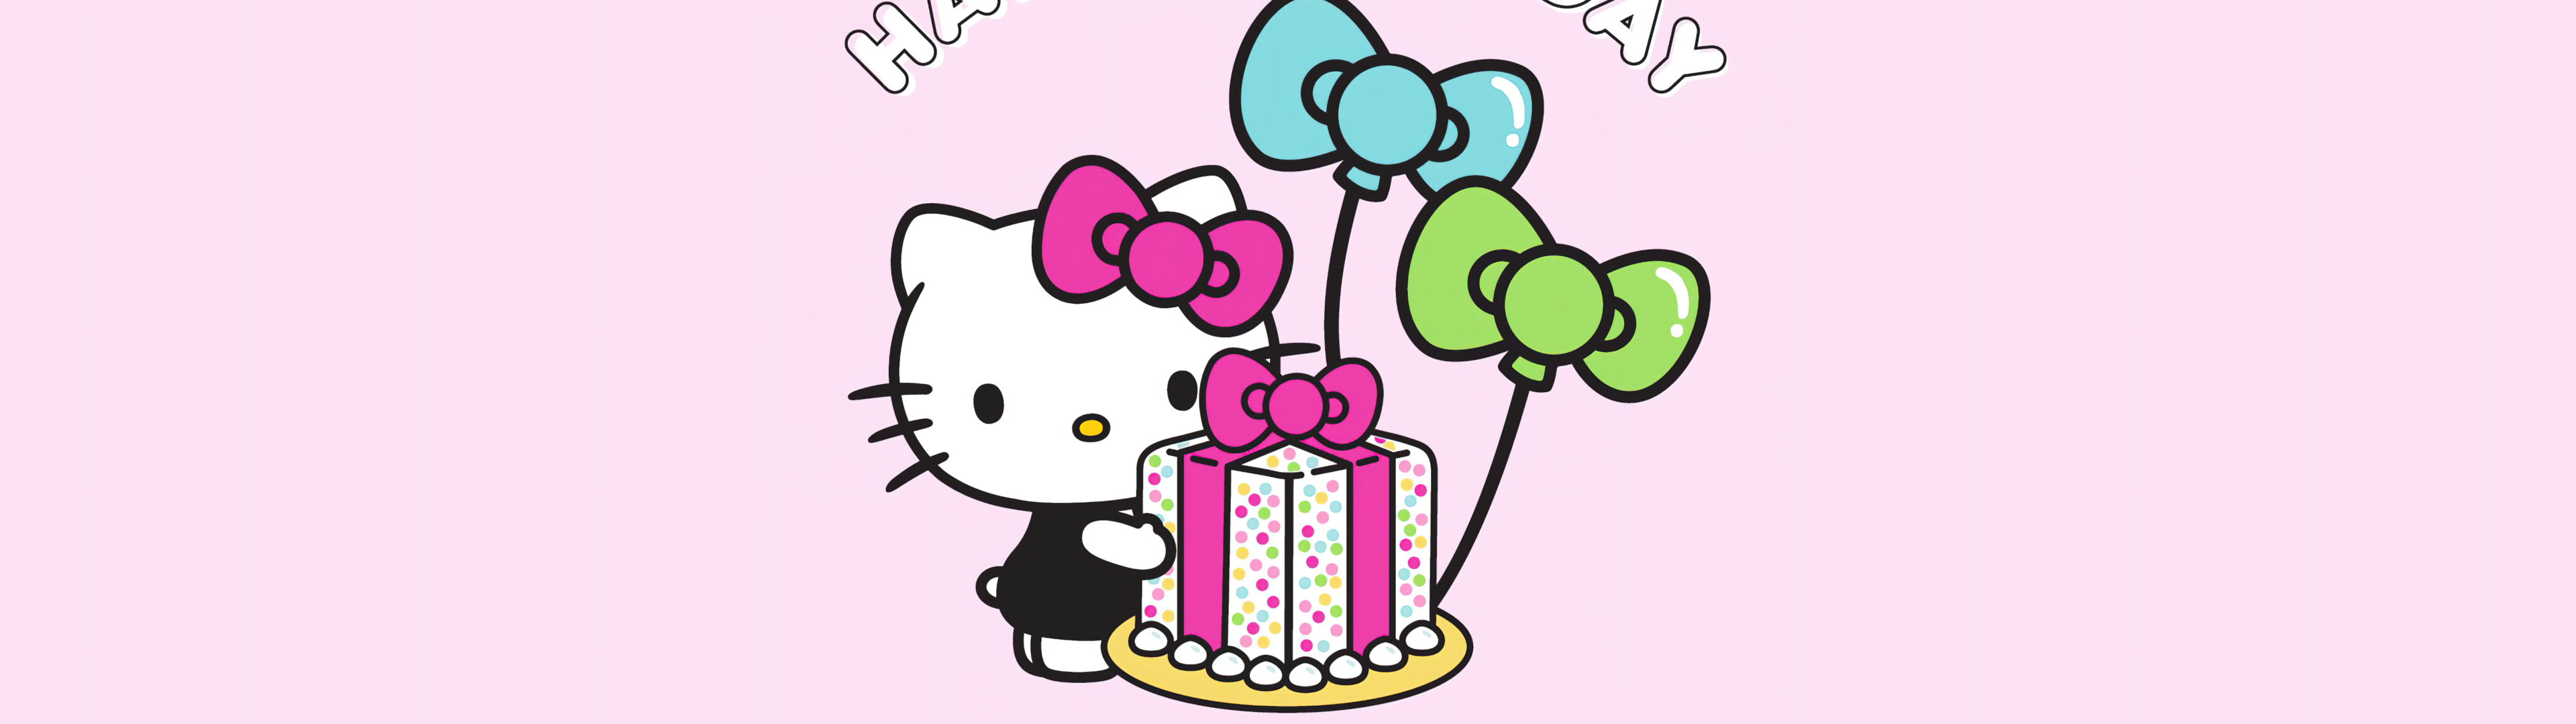 Happy Birthday Wallpaper 4K, Hello Kitty background, Celebrations, #9959